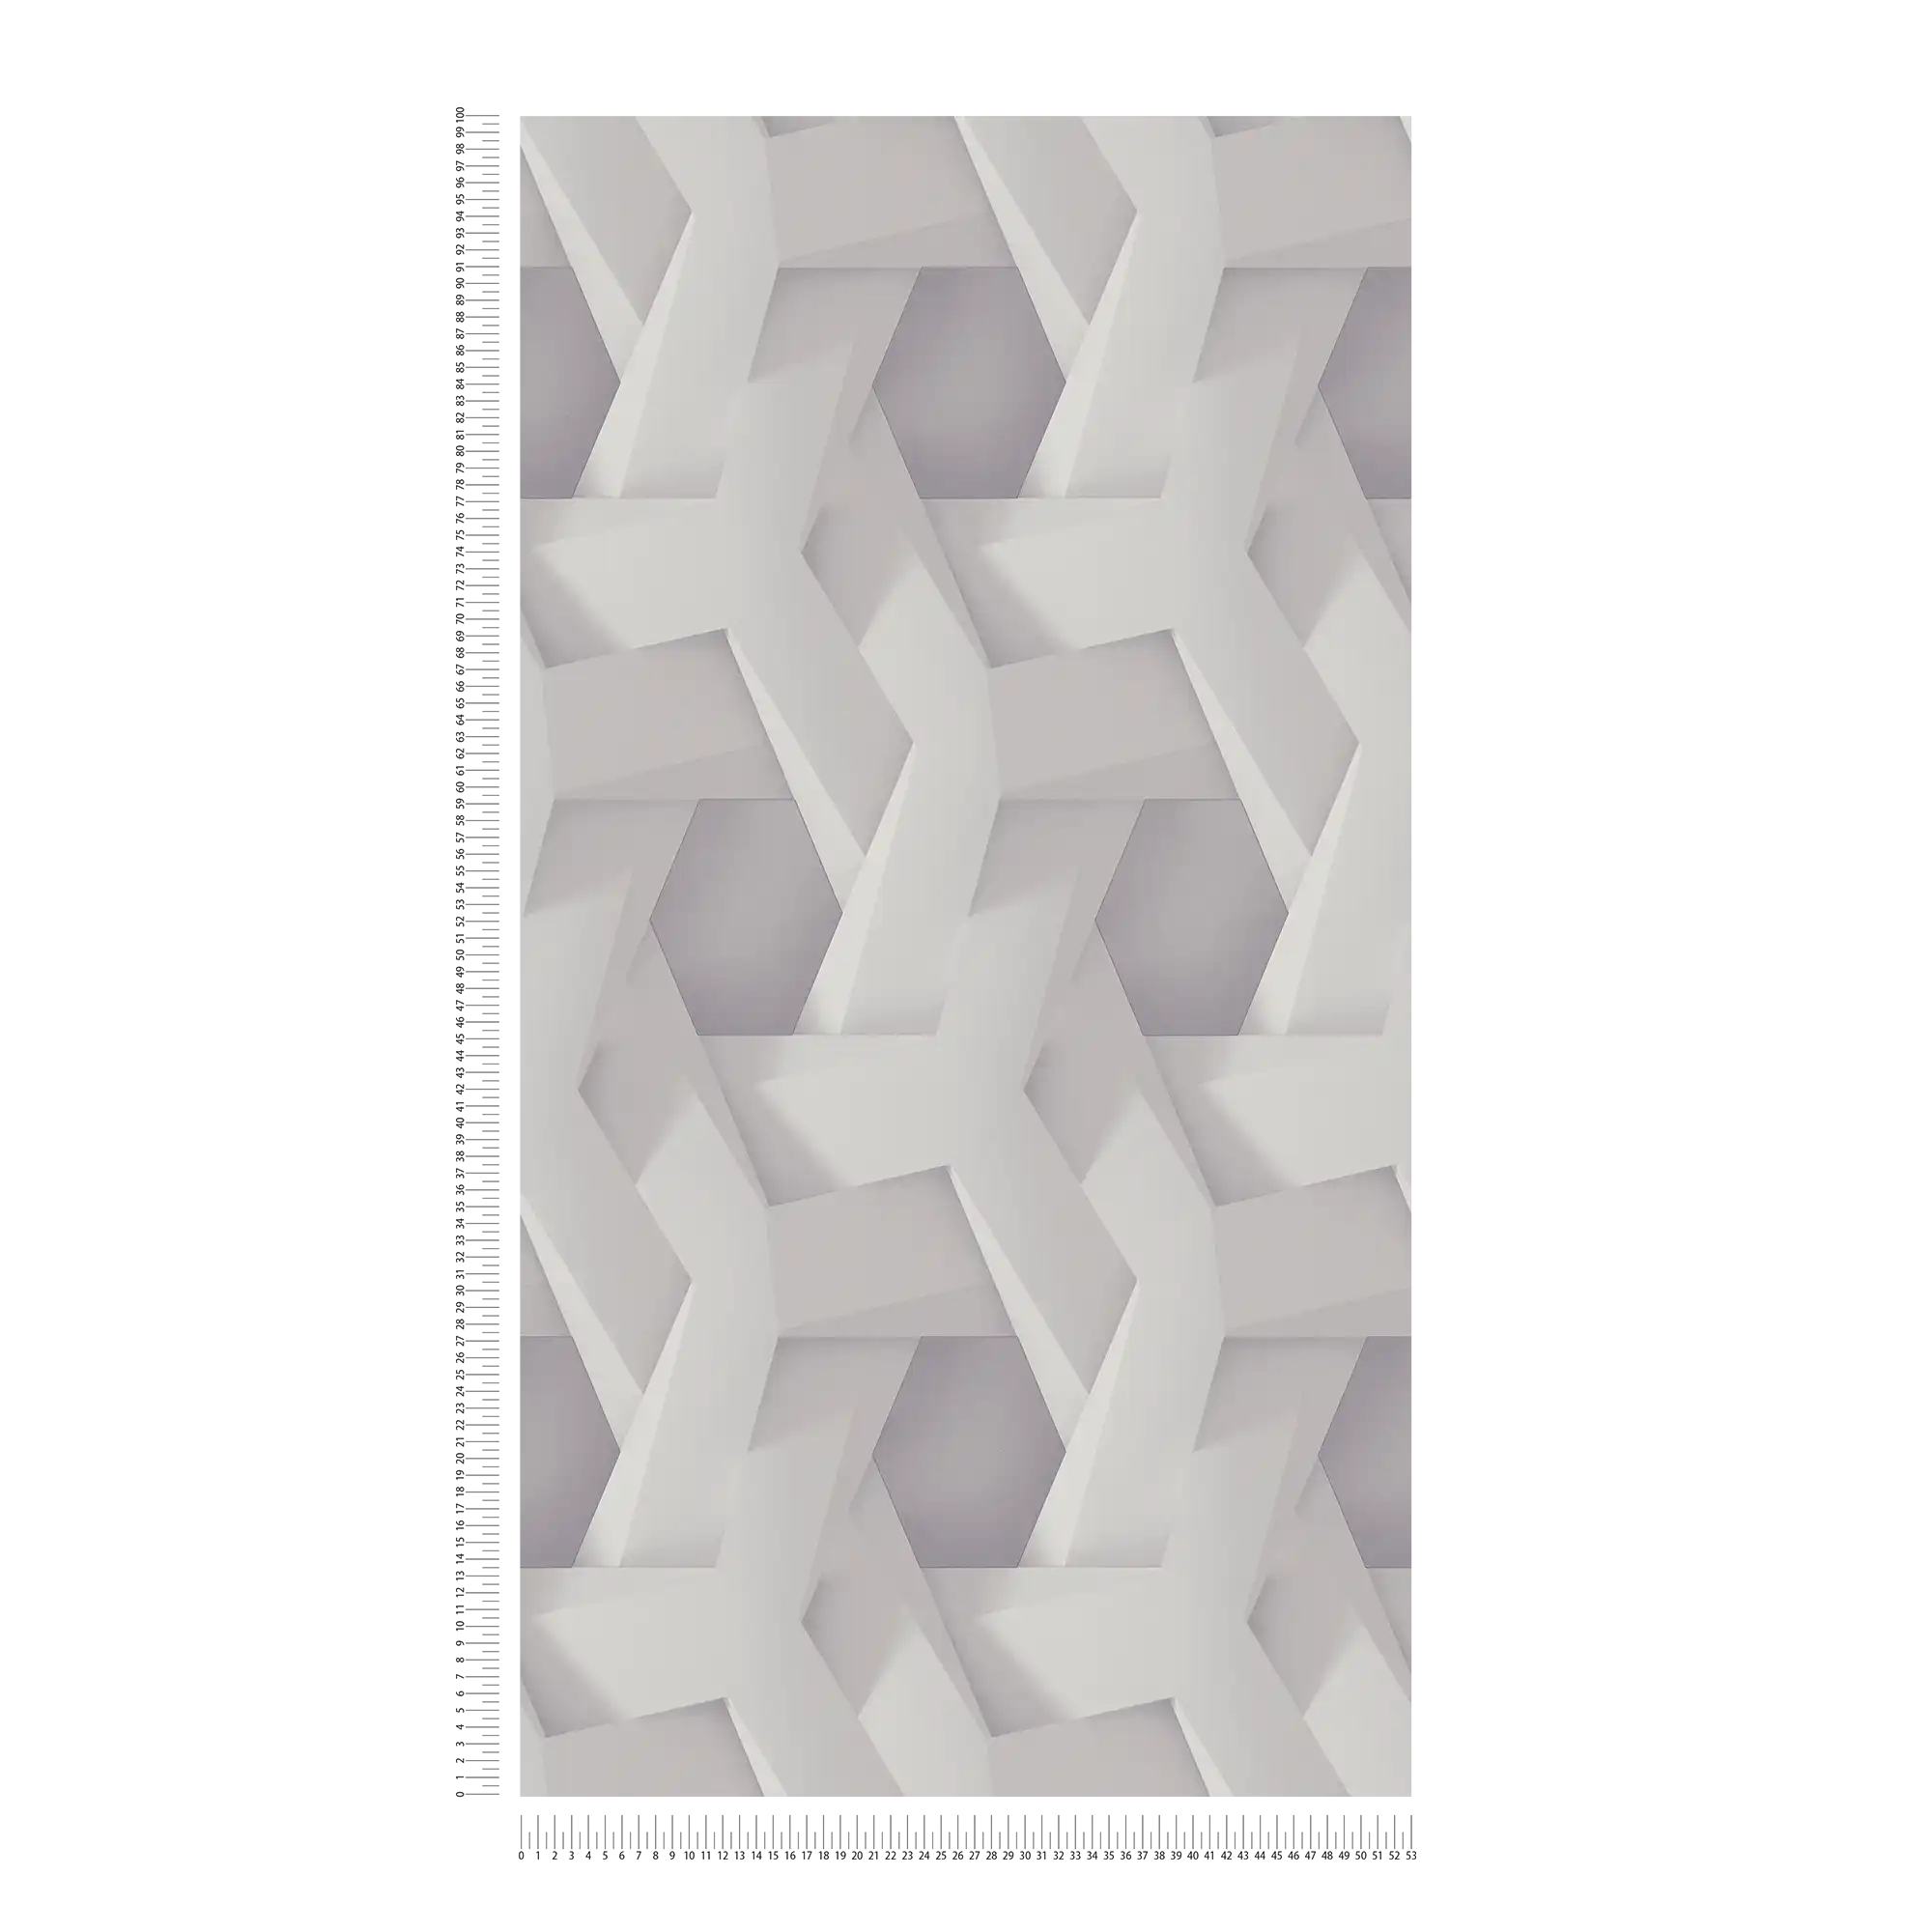             Carta da parati 3D grigio chiaro con motivo grafico dall'aspetto concreto
        